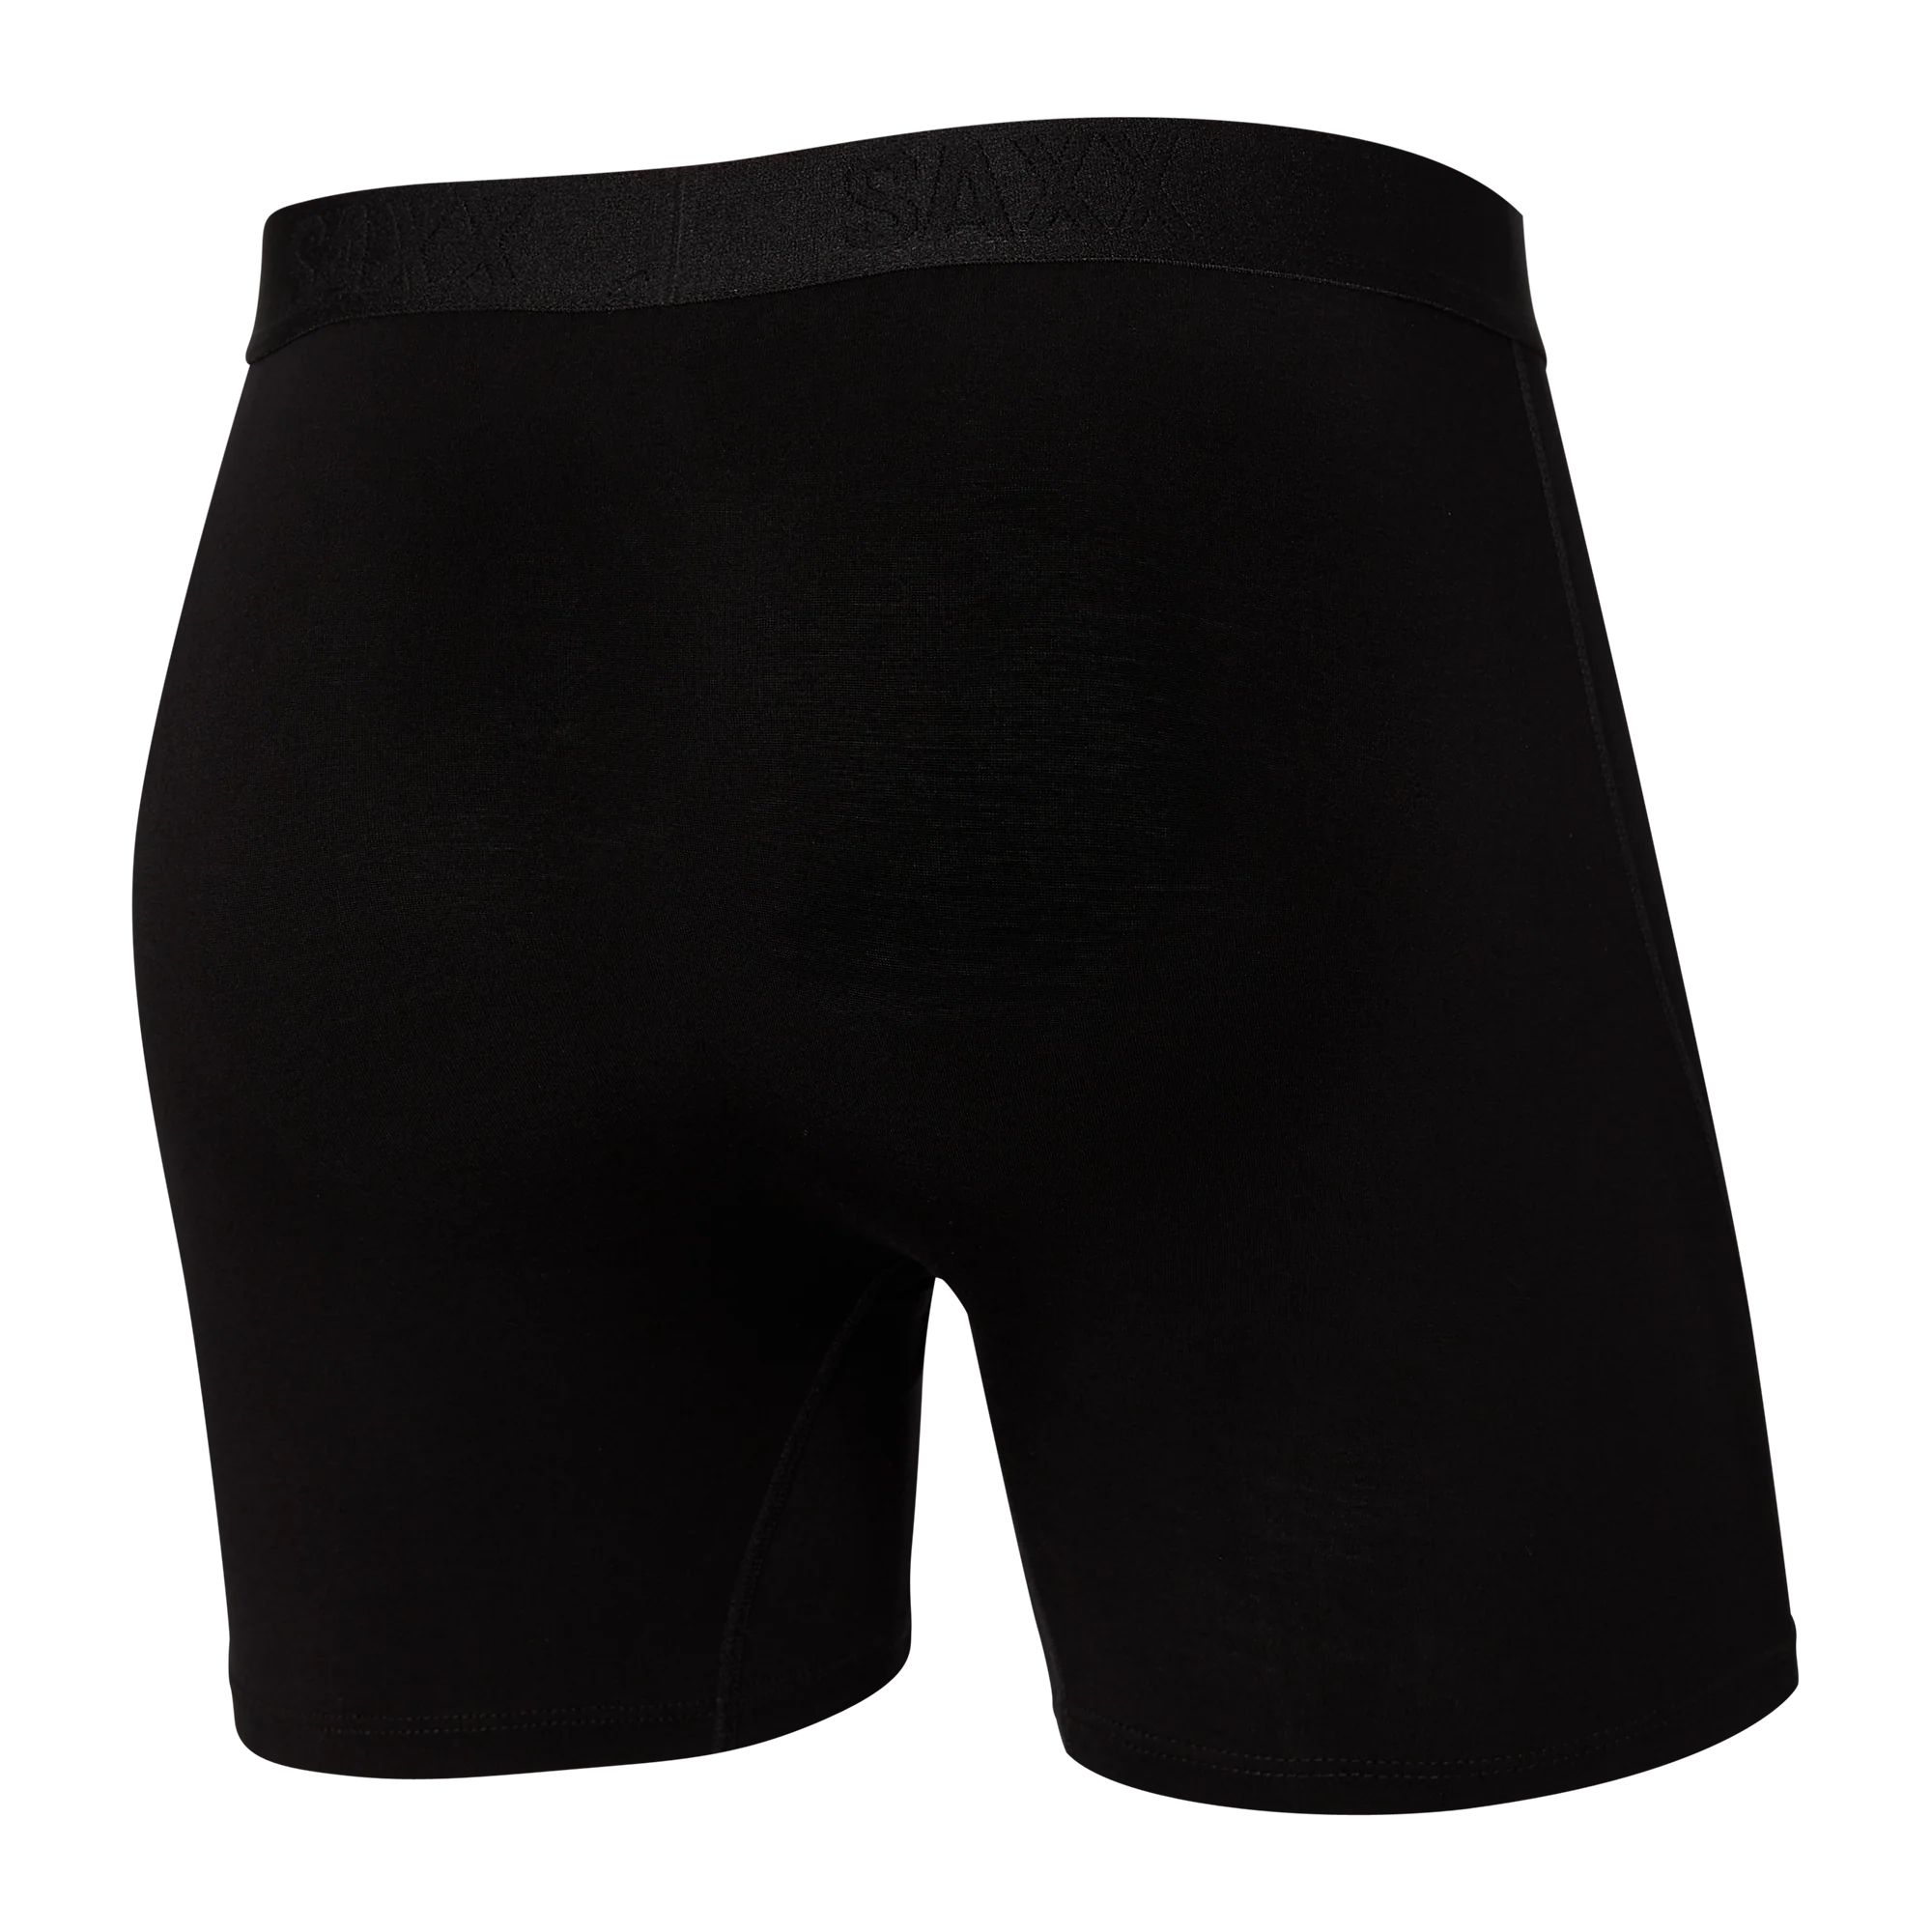 'SAXX Ultra Super Soft Boxer Brief - Black' in 'Black' colour